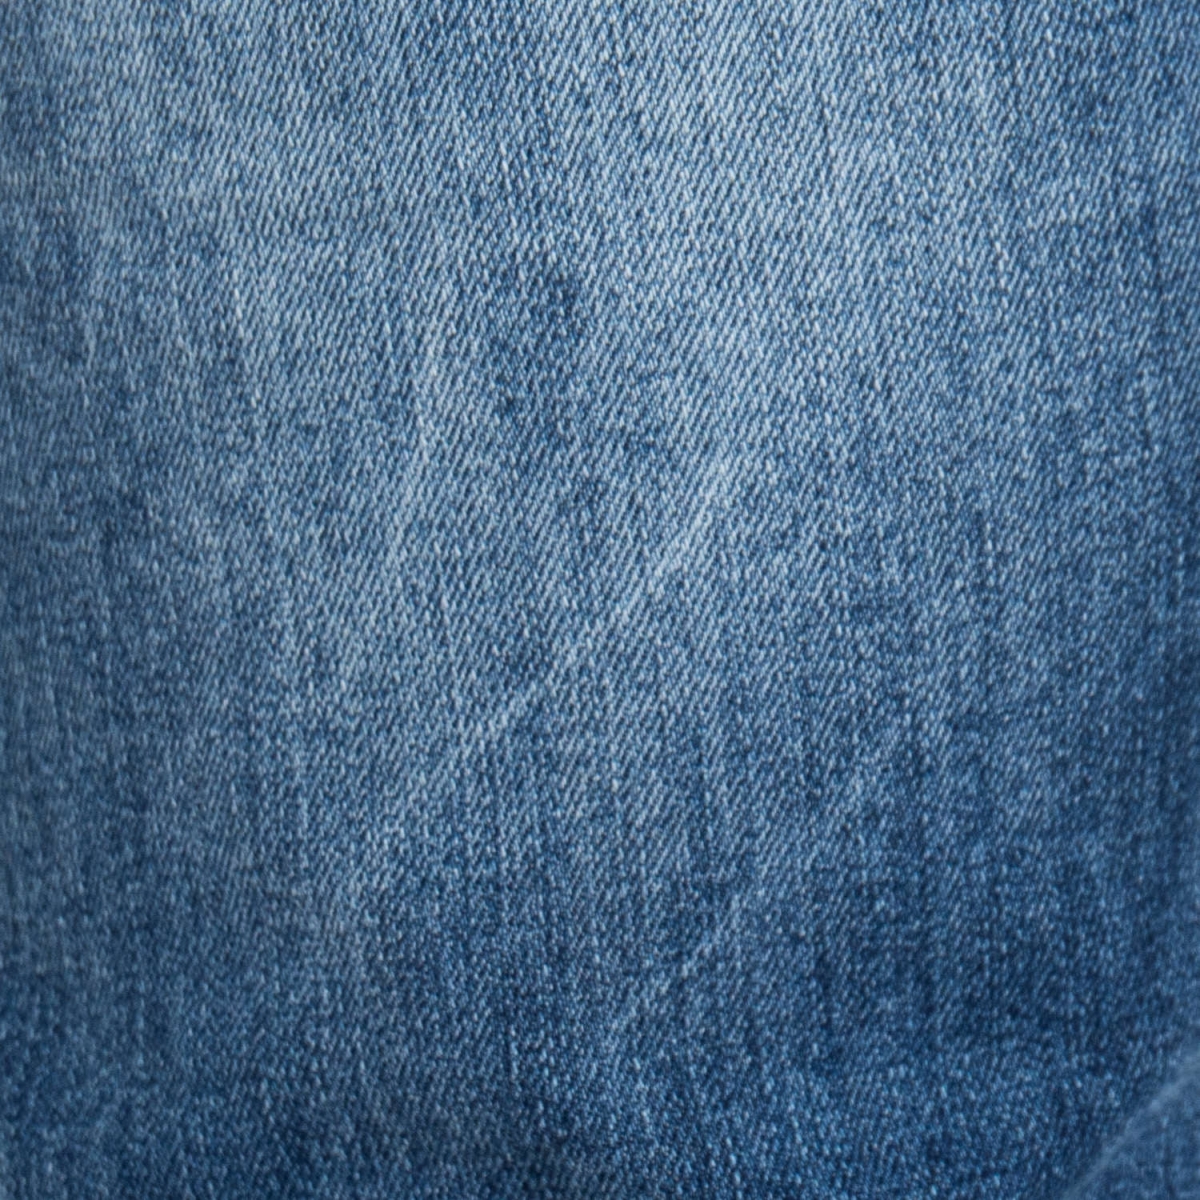 vêtements Jeans homme LPHM1049P BLU Cafedelmar Shop